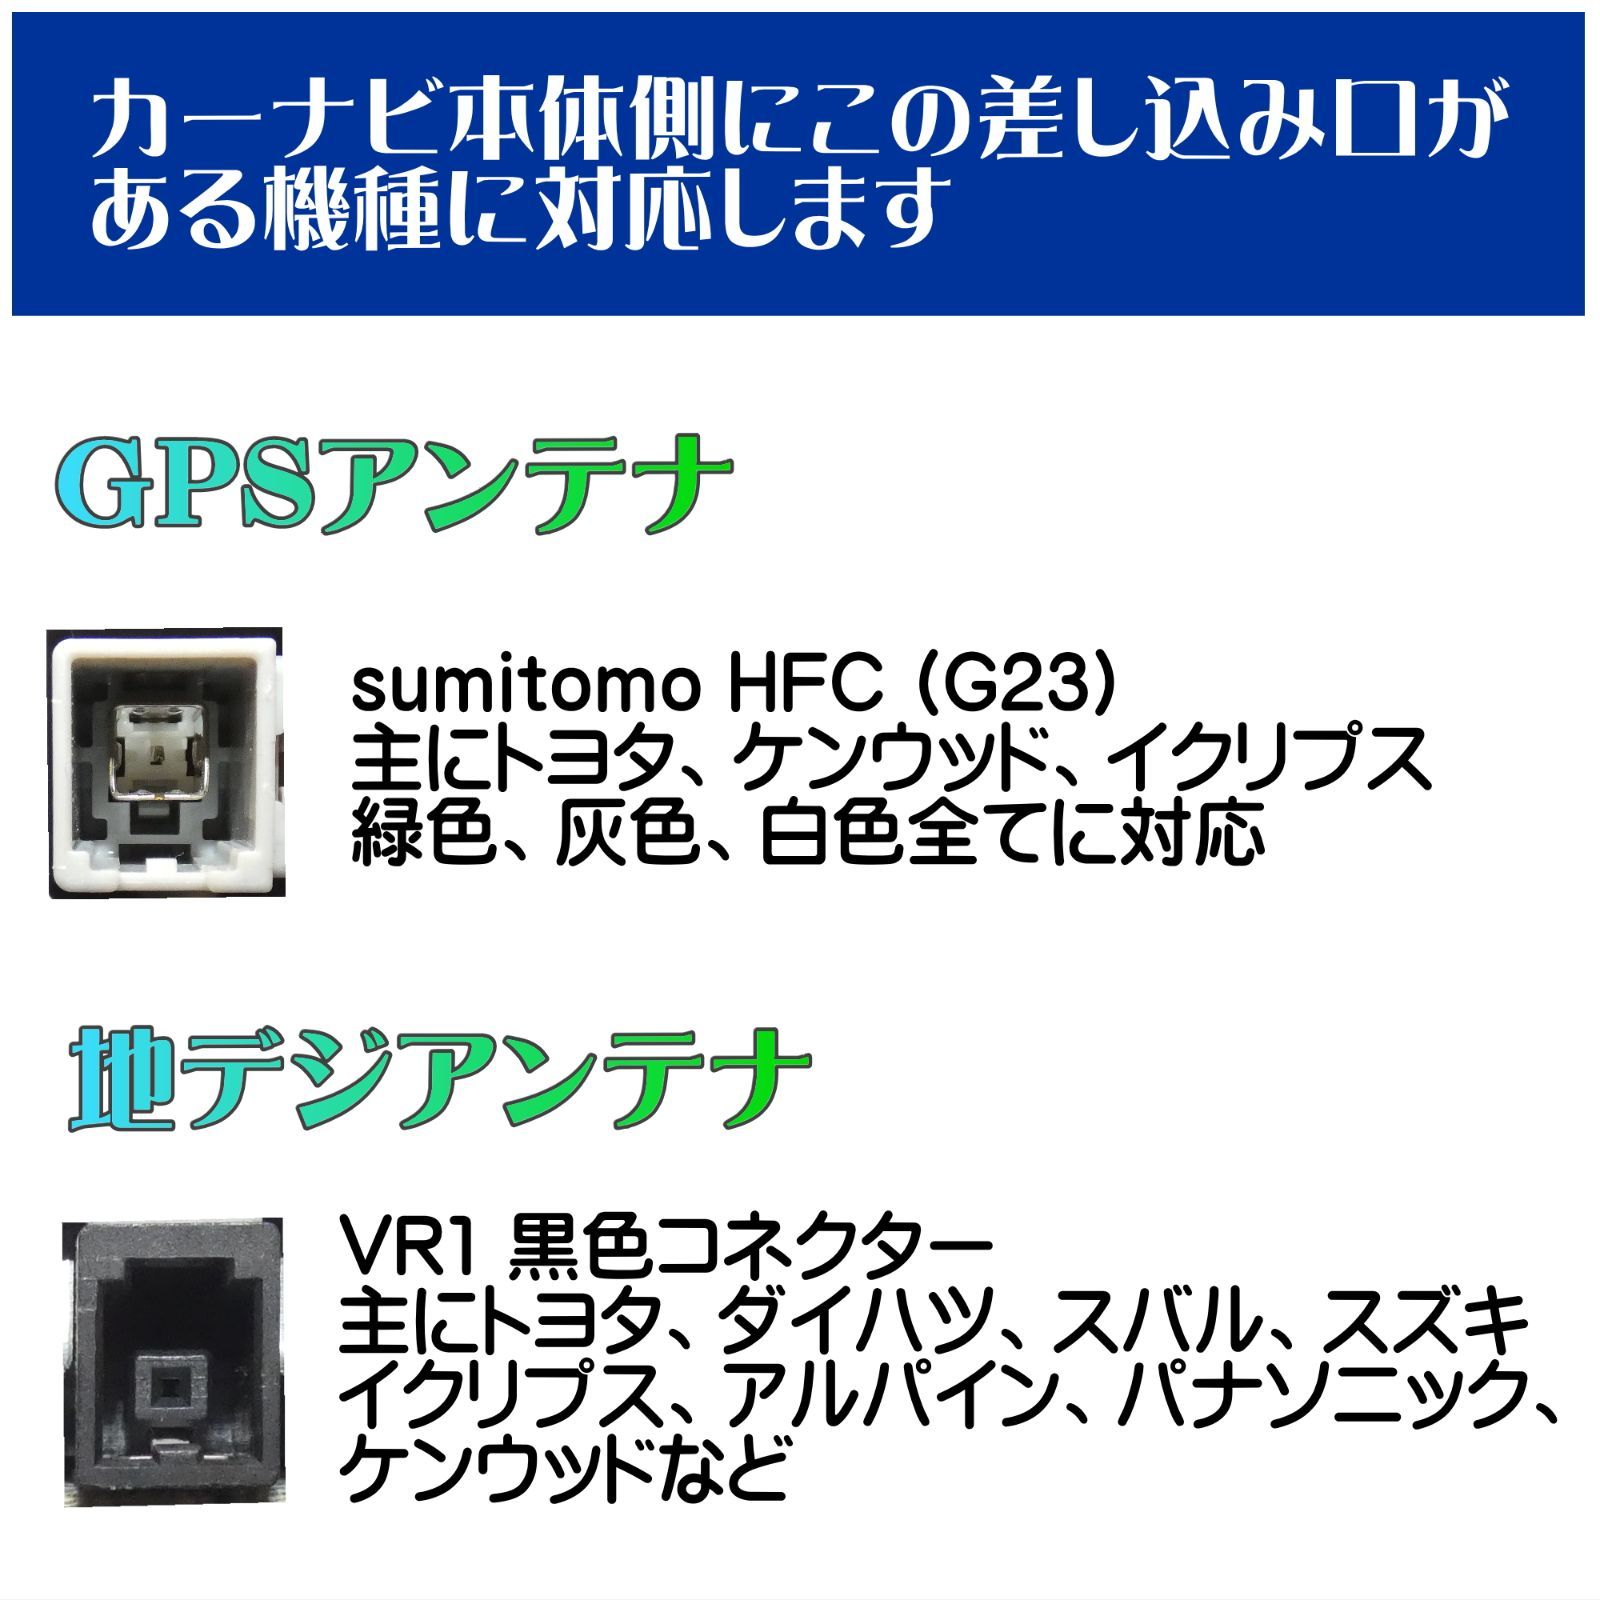 トヨタ / ダイハツ 純正 NSCP-W61 対応 GPS一体型 ワンセグ フィルムアンテナ アンテナケーブルセット HFC G23 VR1 -  メルカリ